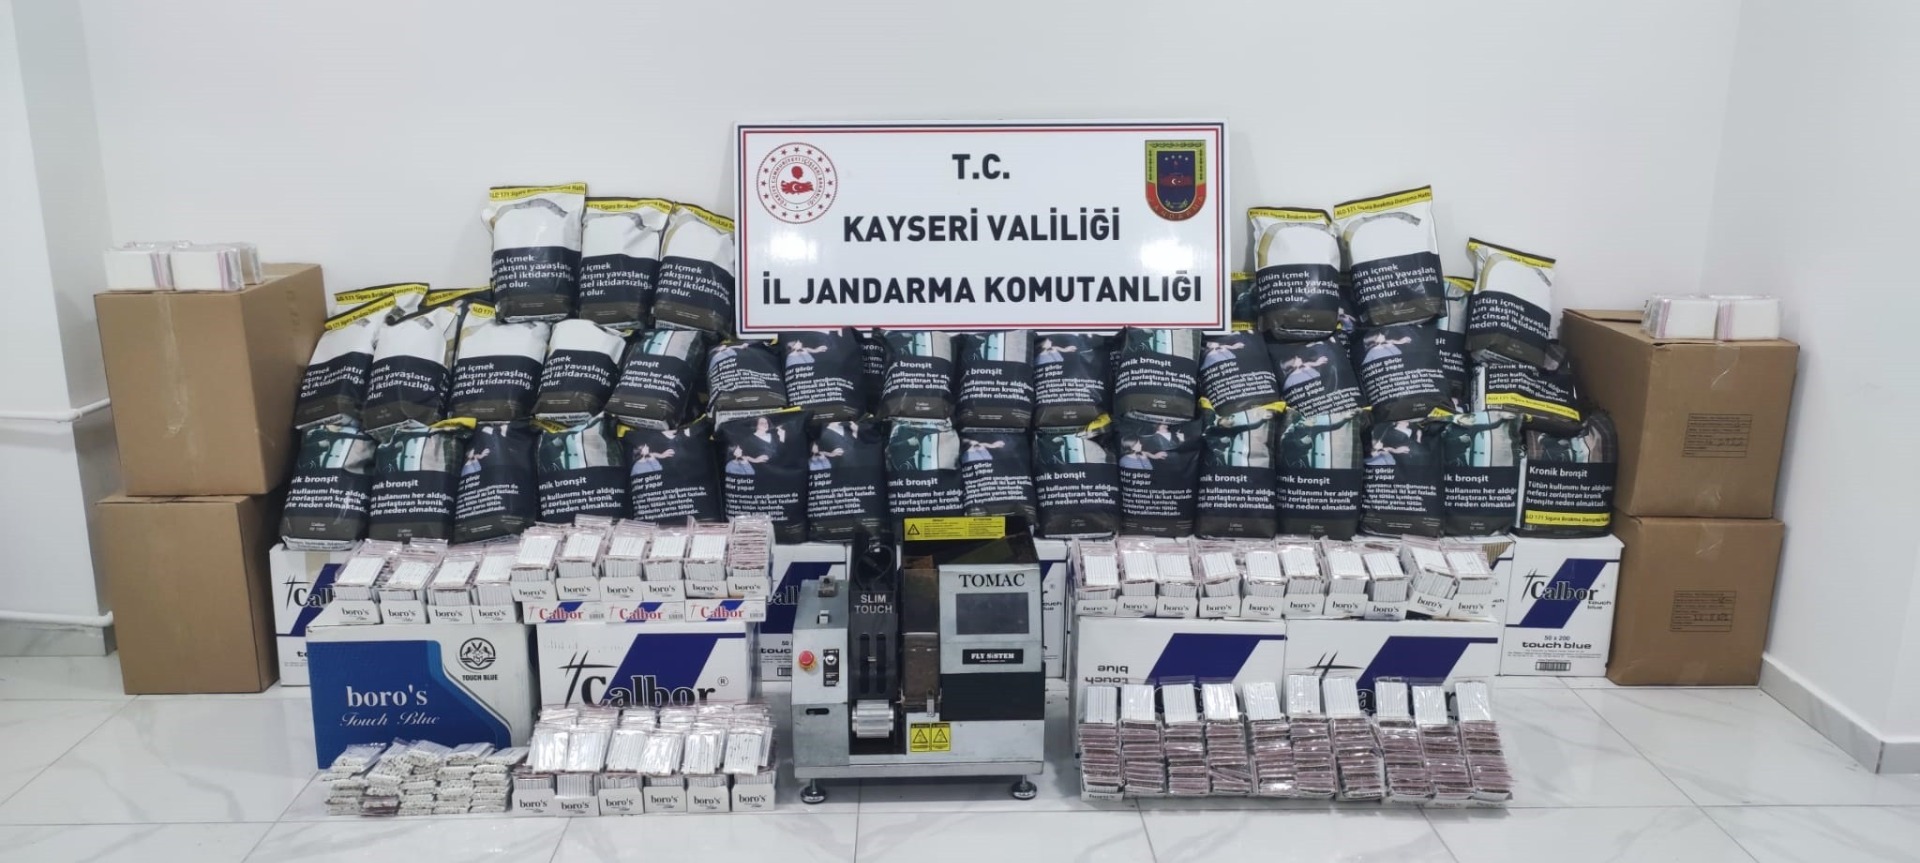 Kayseri'de 100 kilo kaçak tütün ele geçirildi